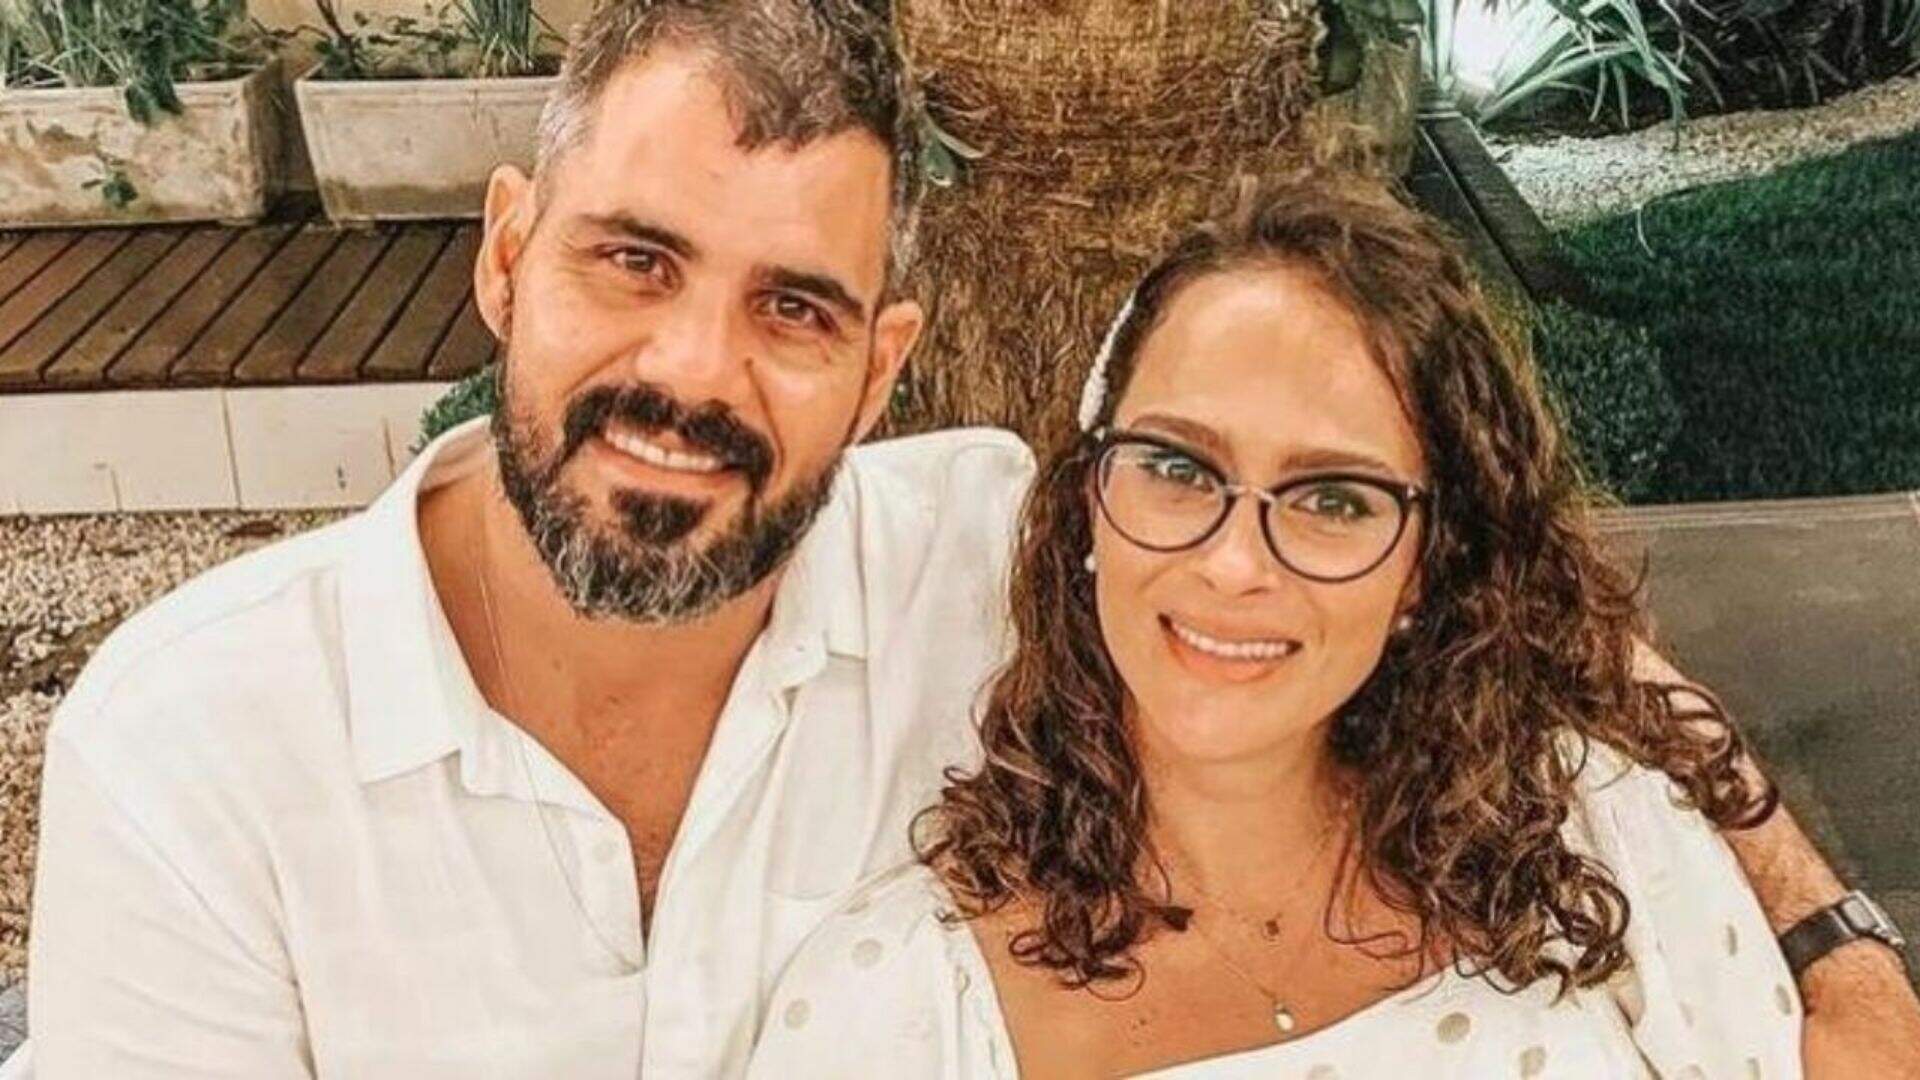 Juliano Cazarré expõe intimidade e conta que está há 6 meses sem transar com a esposa: ‘castidade’